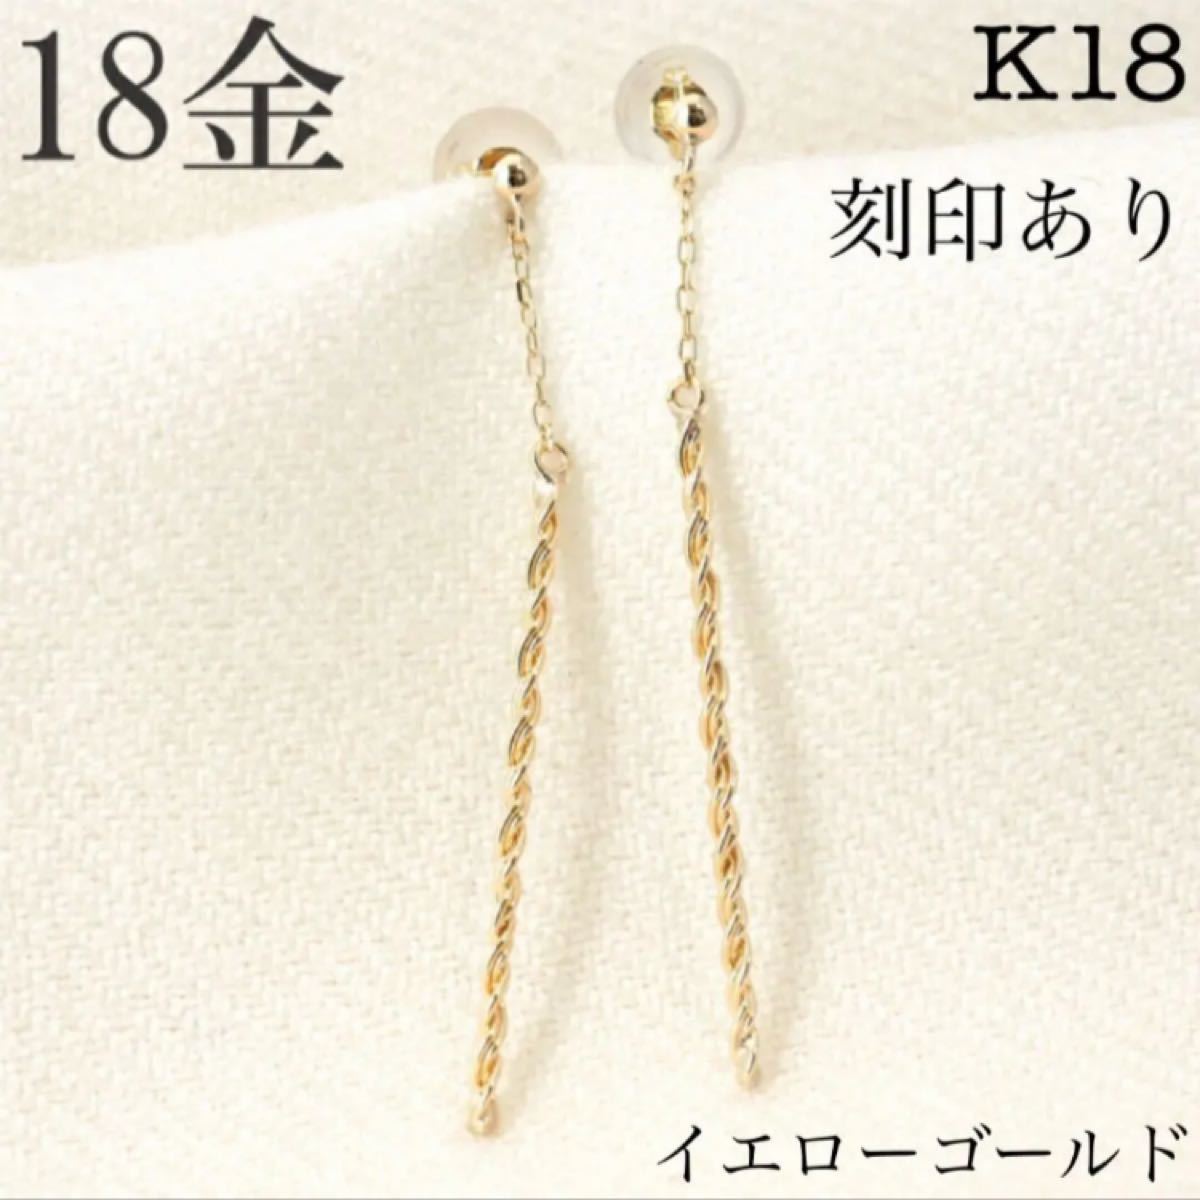 新品 K18 イエローゴールド 18金ピアス 刻印あり 上質 日本製 ペア